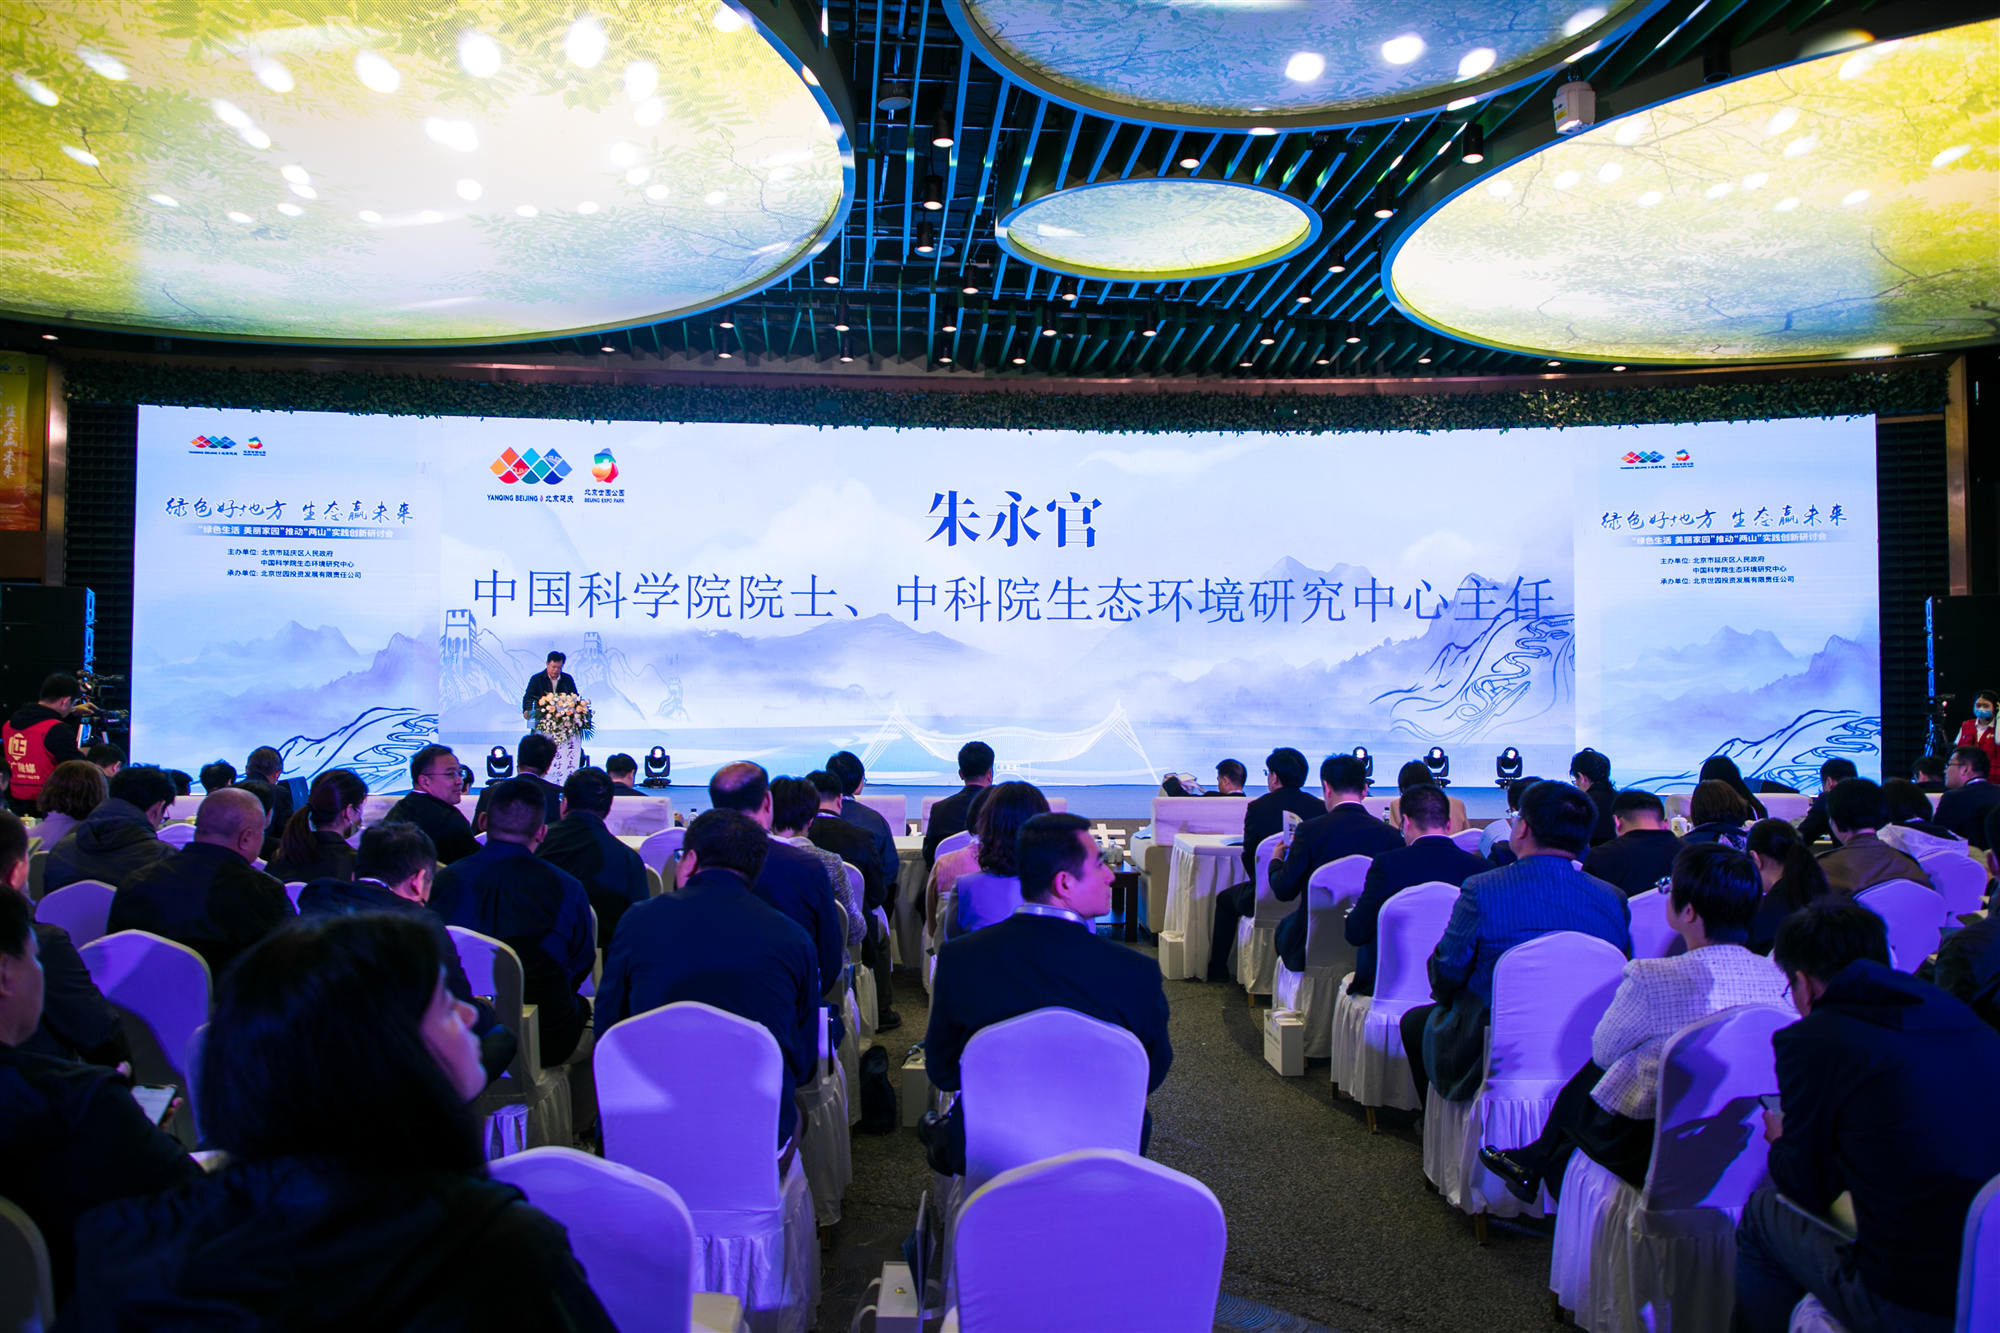 推動「兩山」實踐創新研討會在北京延慶舉辦 延慶將發展「北京市無人駕駛航空示範區、國際體育（冰雪）產業示範區」